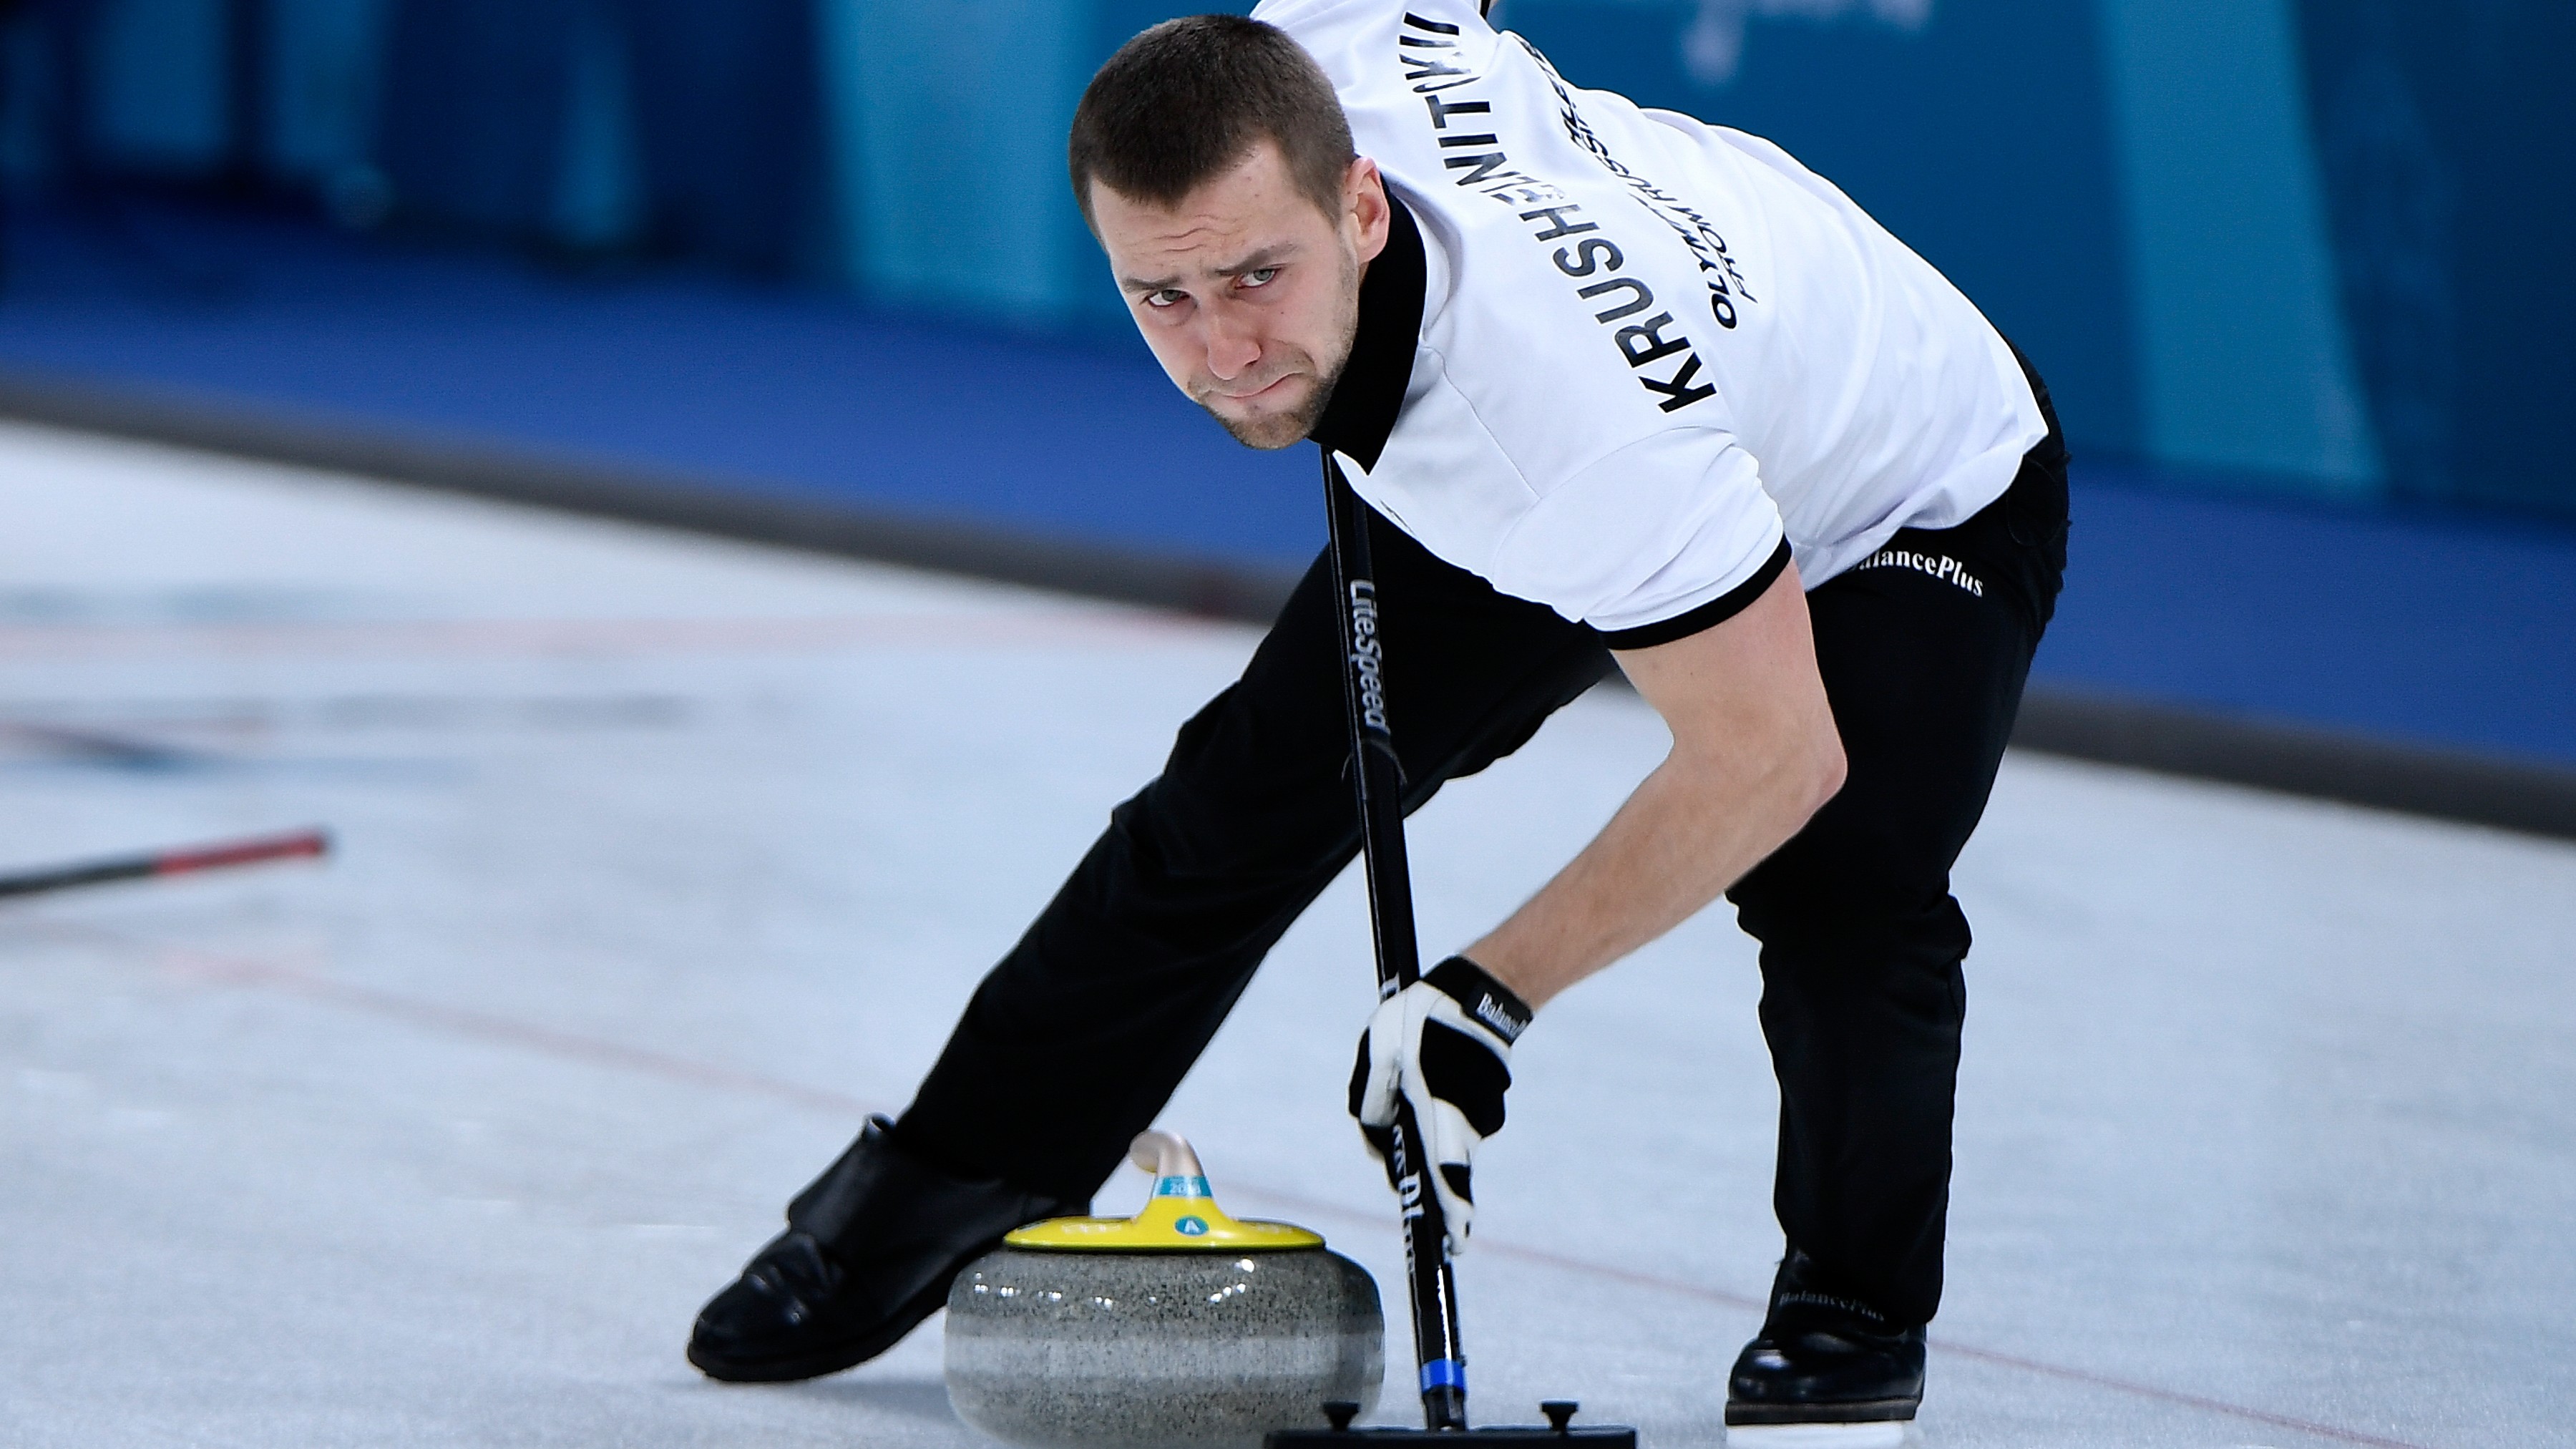 PyeongChang 2018, doping nel curling: russo medaglia di bronzo trovato positivo